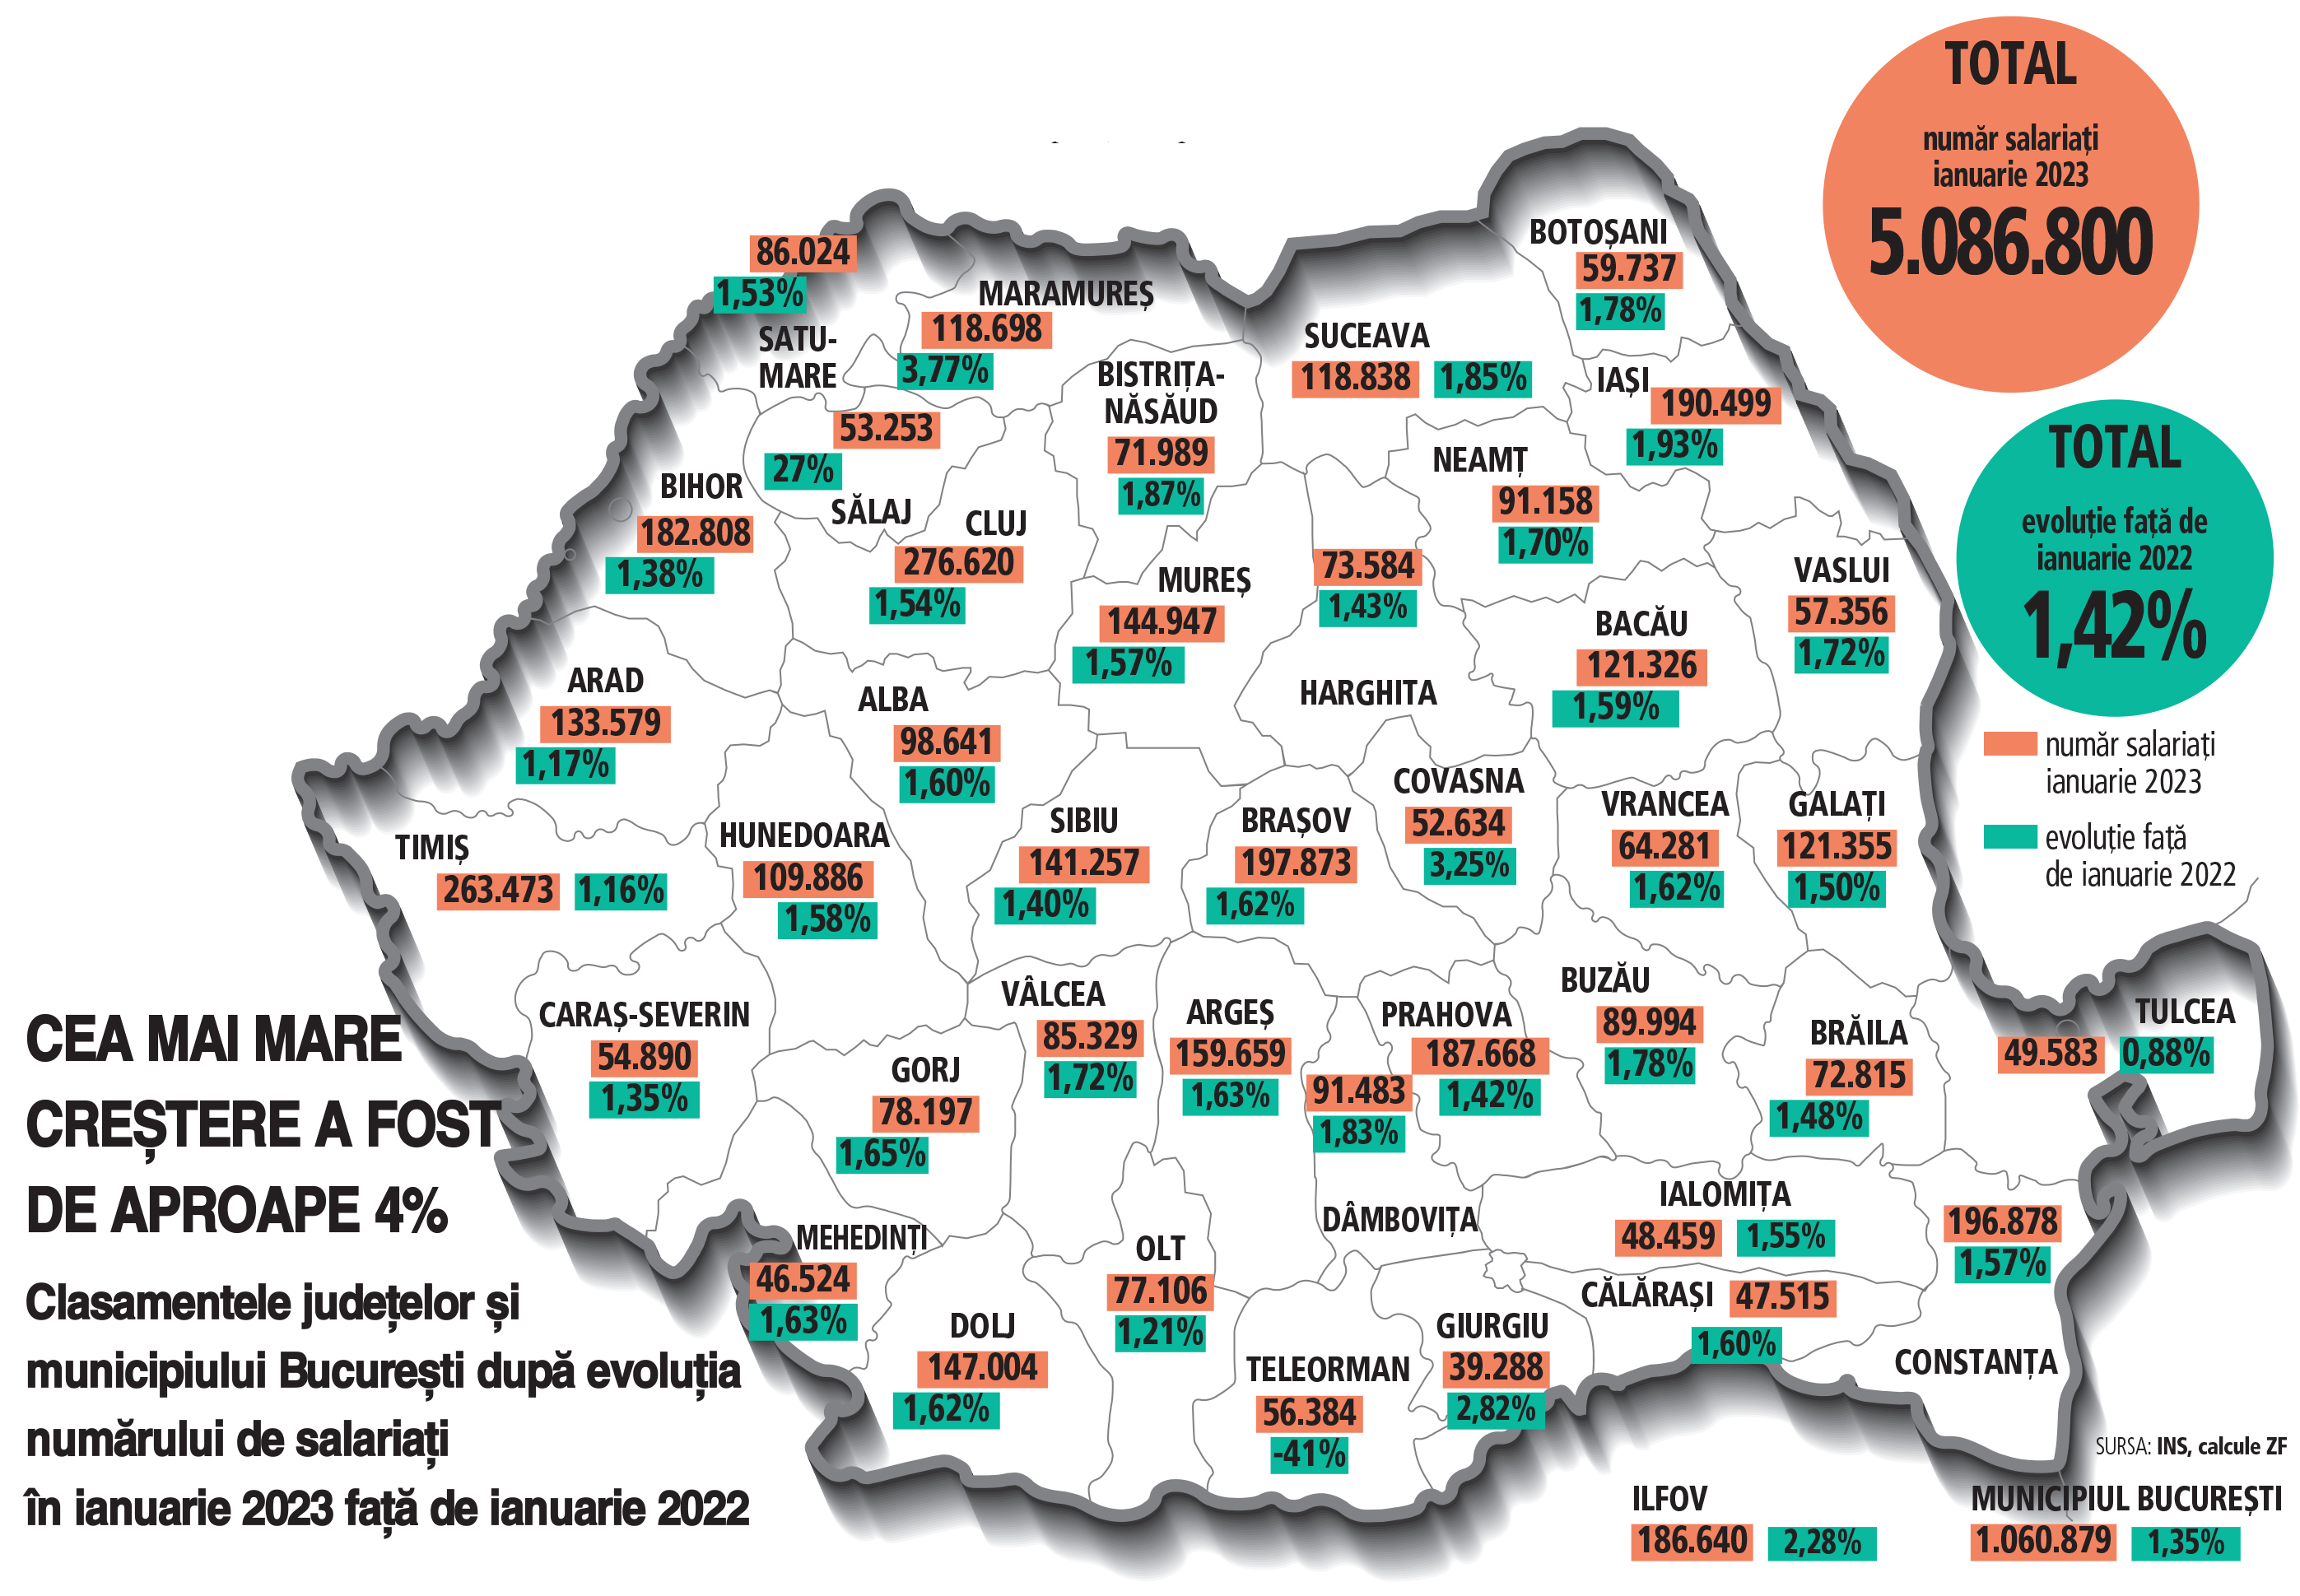 Topul judeţelor după evoluţia recrutării. Maramureşul, Covasna şi Giurgiu au prins cel mai mare avânt în recrutare la începutul anului 2023. Capitala, Clujul şi Timişul rămân judeţele cu cei mai mulţi angajaţi